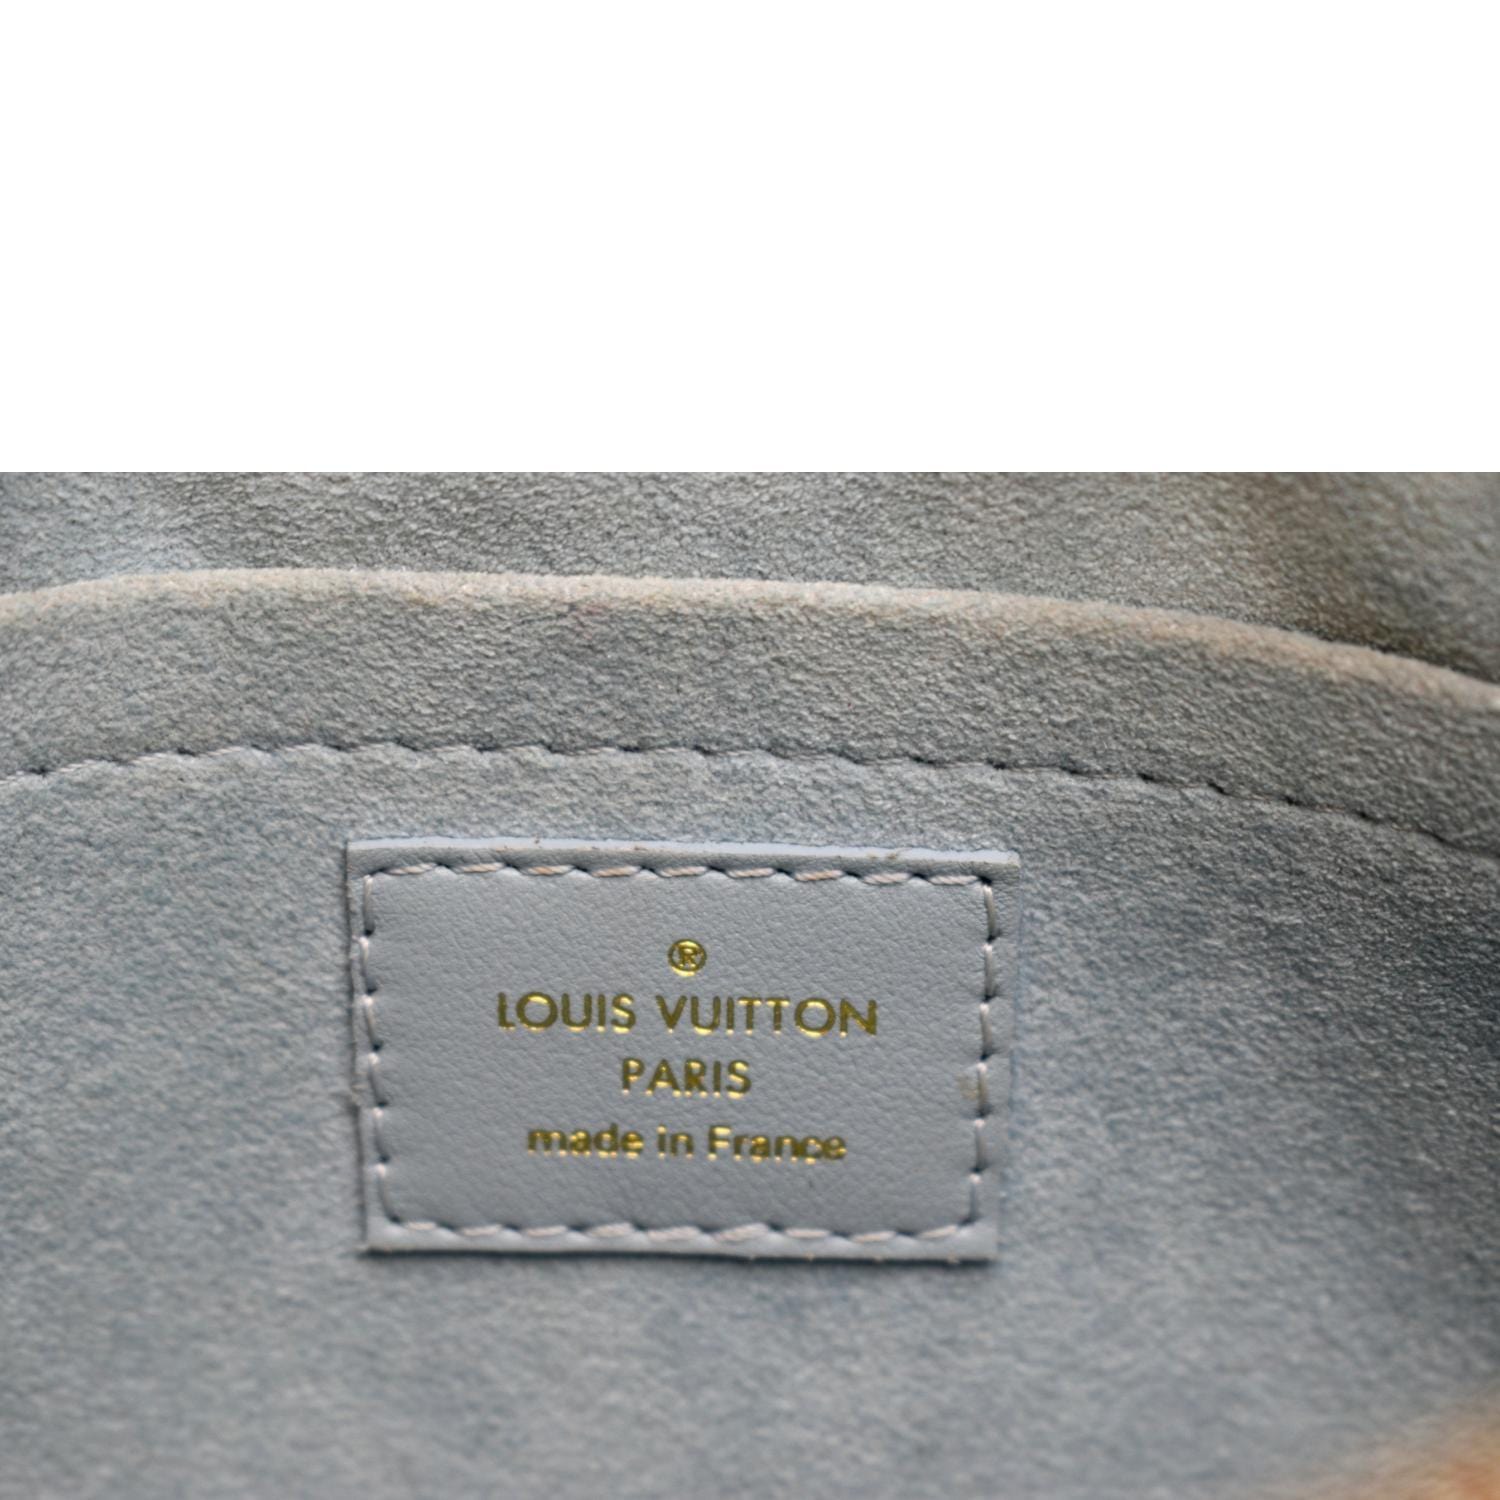 Louis Vuitton New Wave Camera Bag Bleau Navy Blue Calfskin Leather  Crossbody Handbag Unboxing 